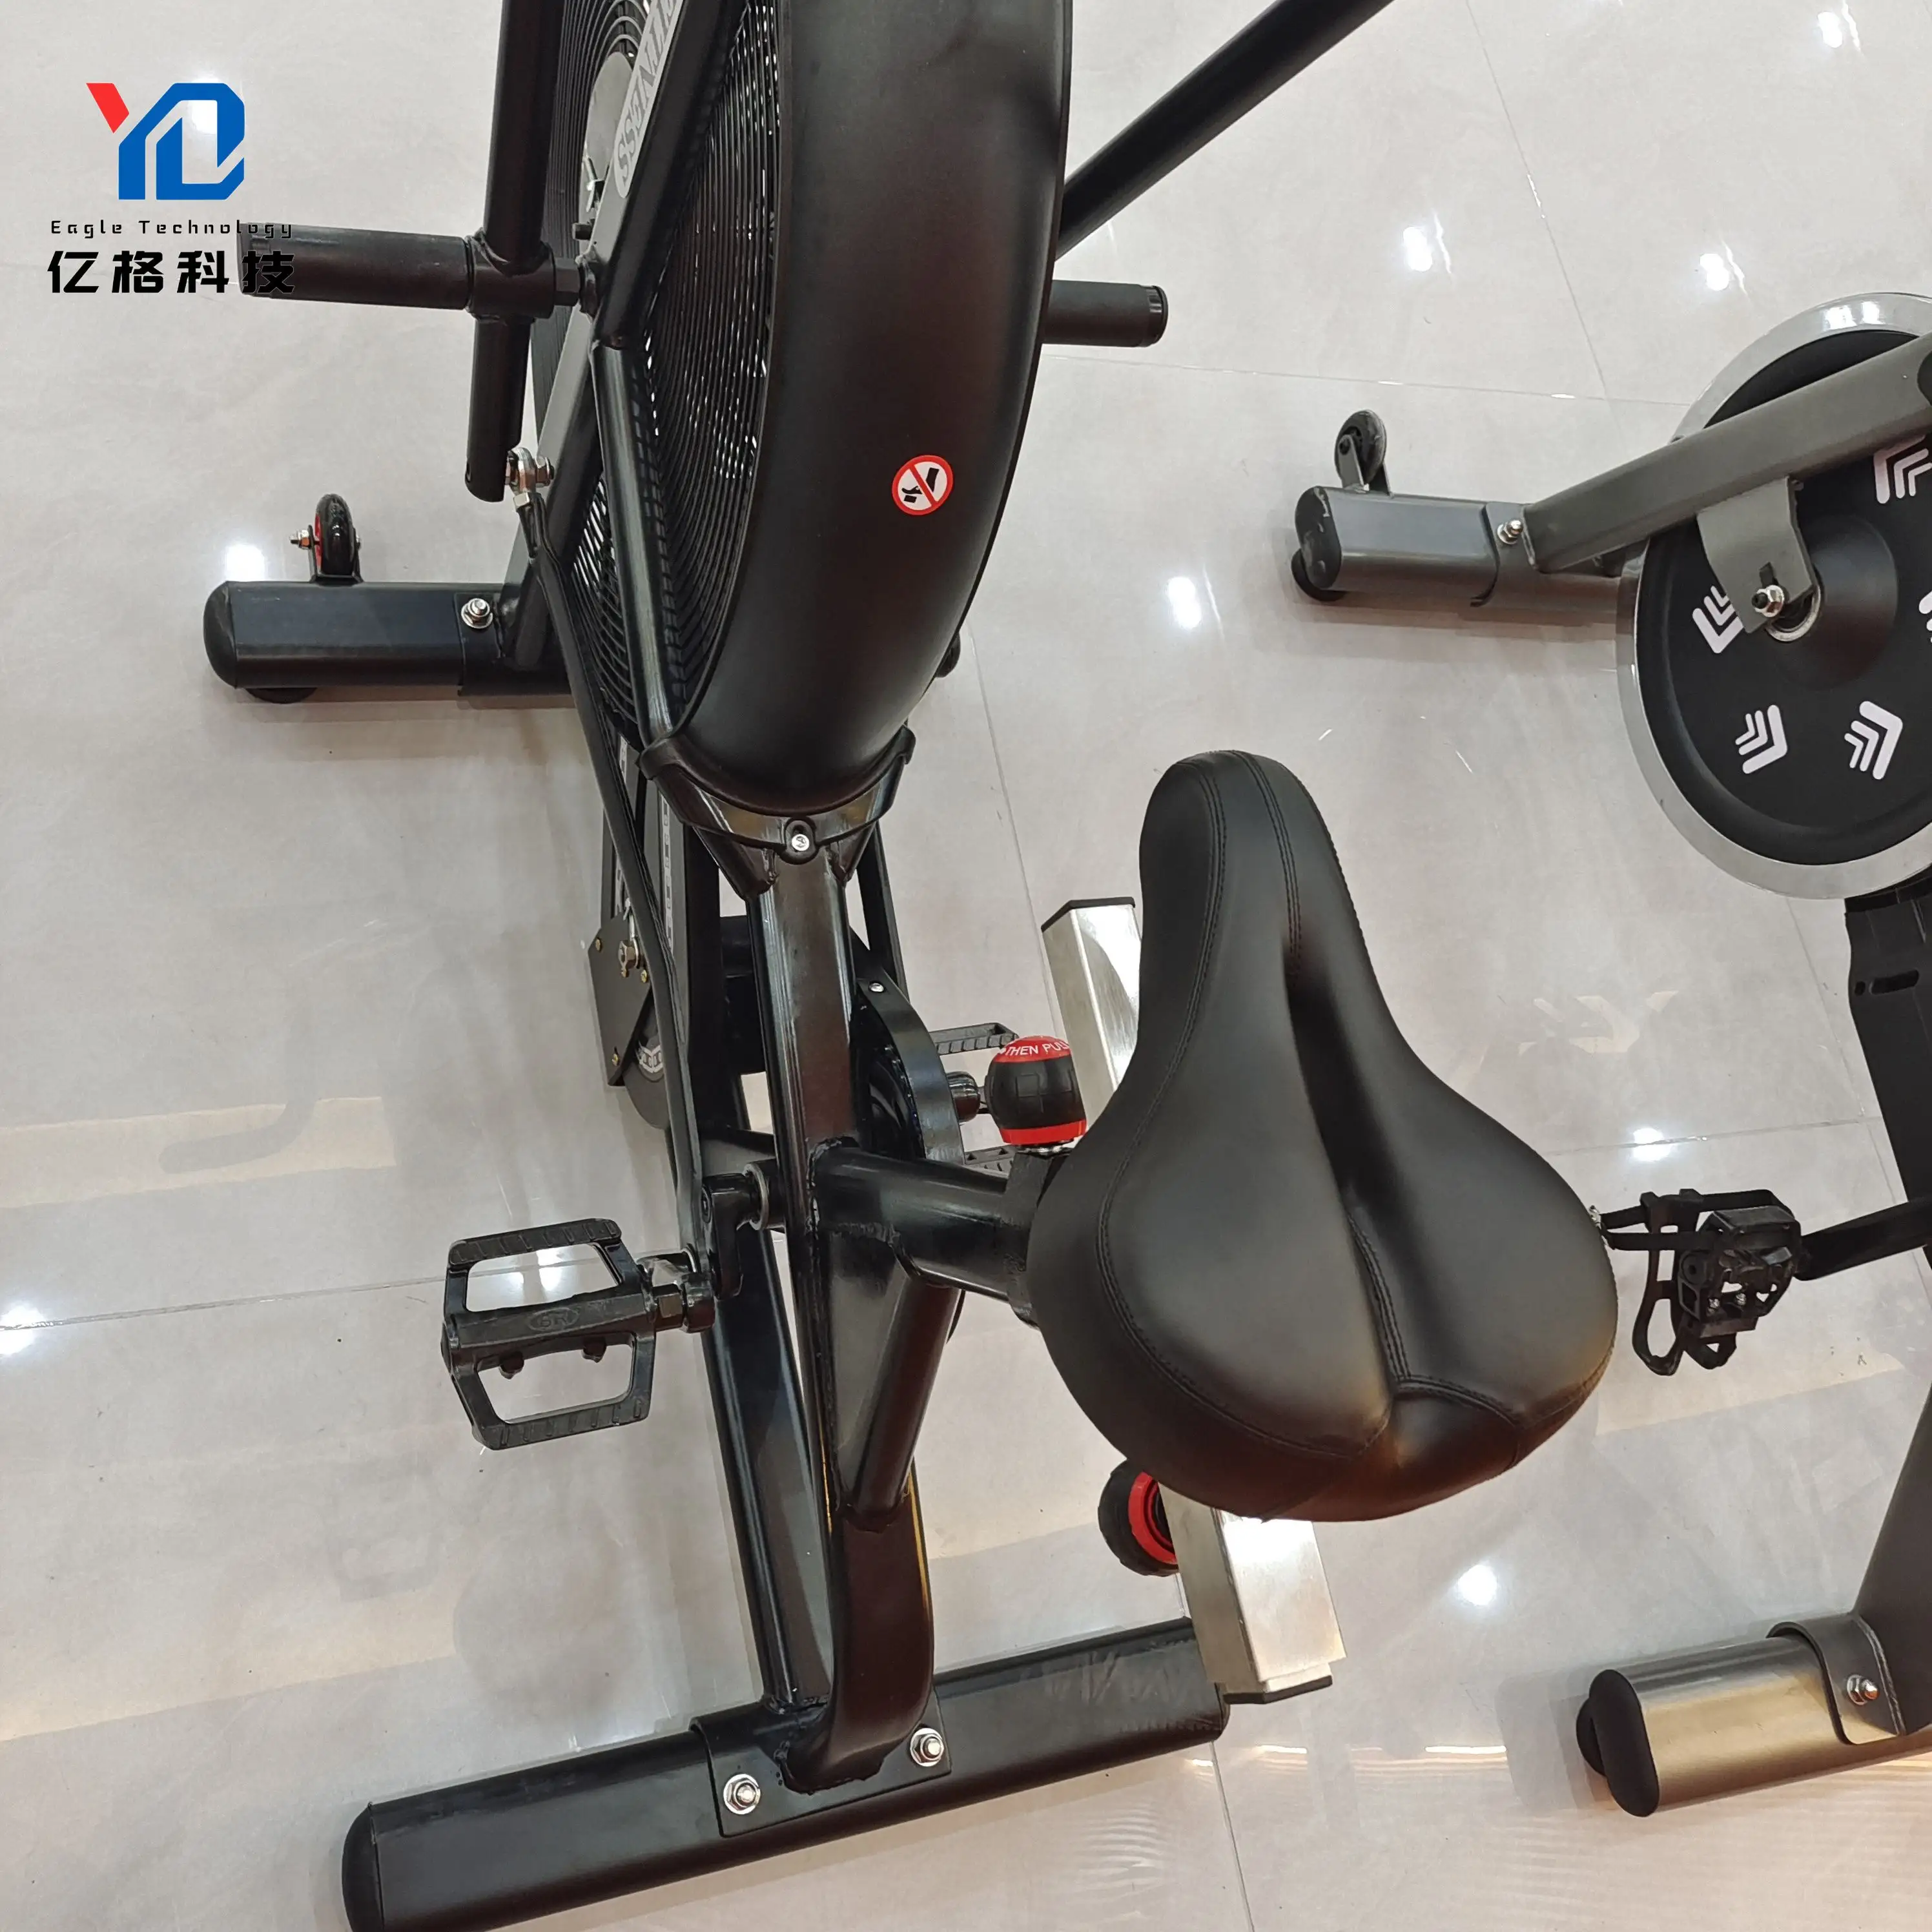 YG-F002 المهنية في الأماكن المغلقة التدريب دراجة هوائية معدات حار بيع دراجة هوائية آلة دراجة هوائية تجارية